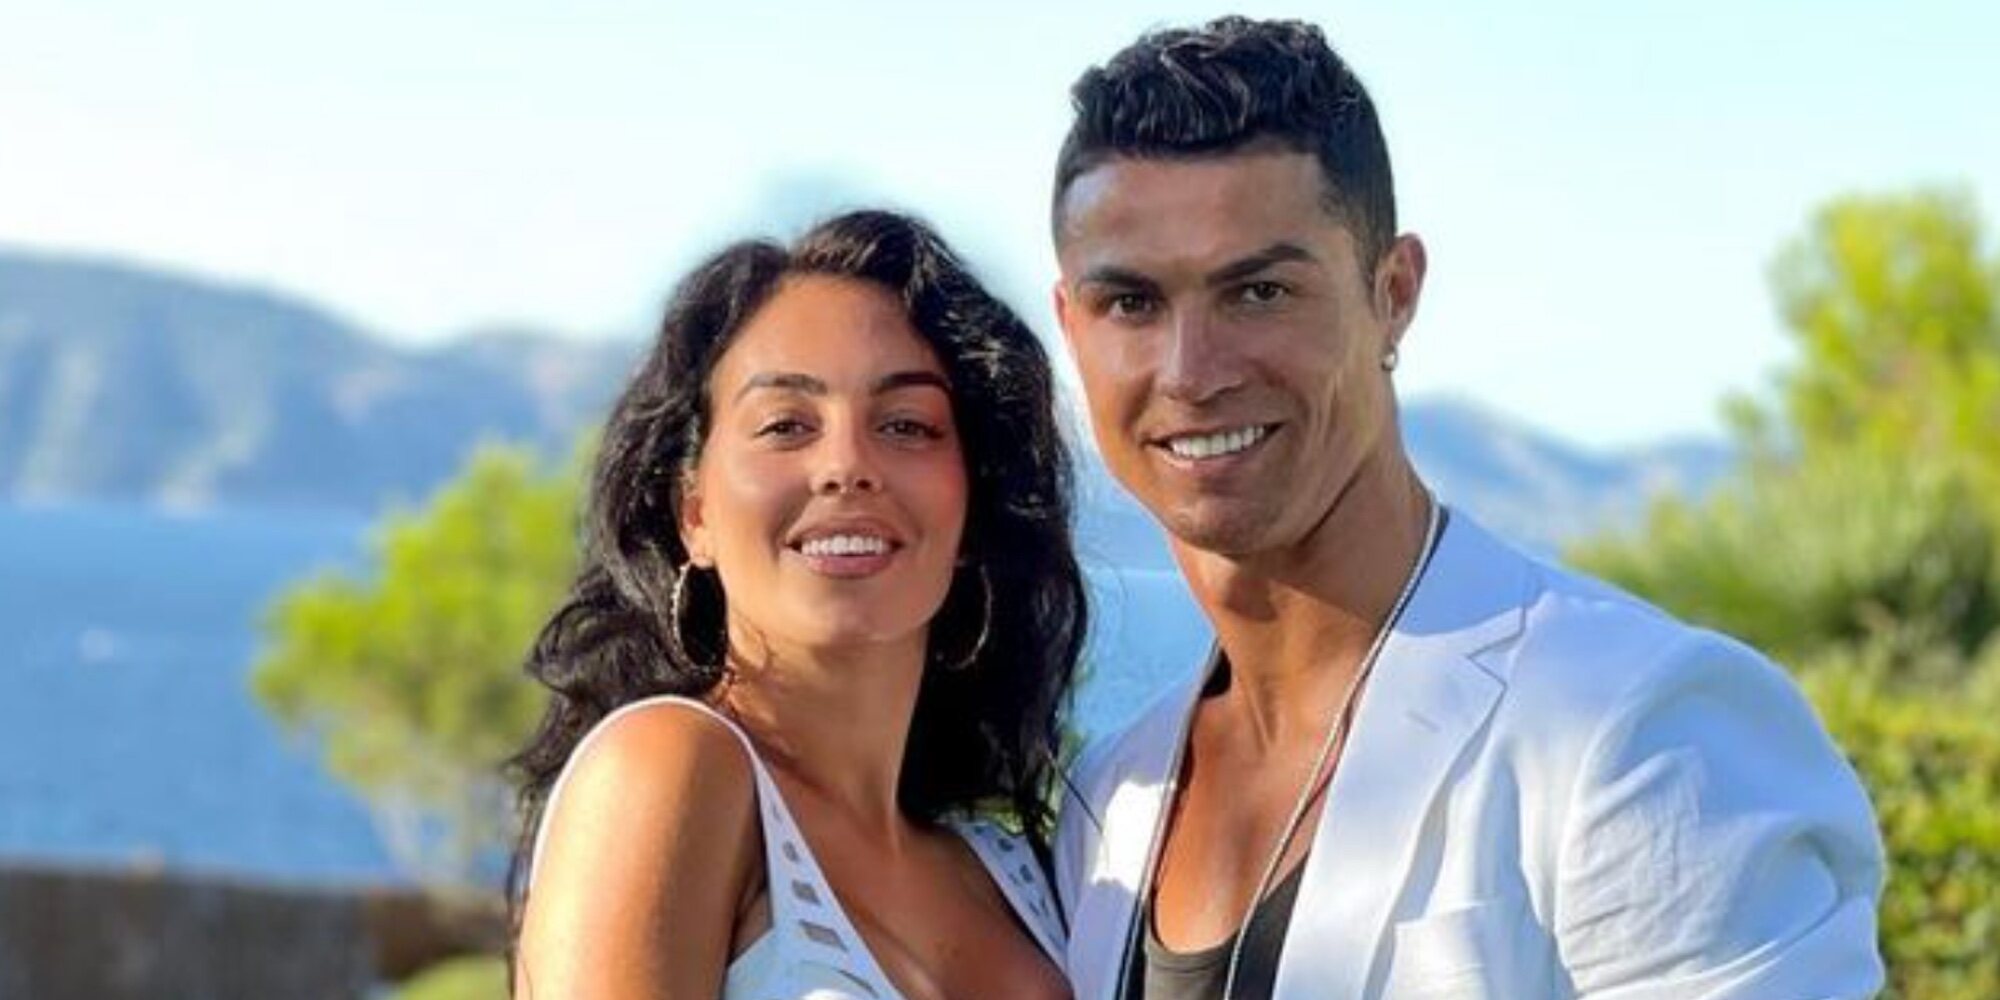 La increíble cantidad de dinero que Cristiano Ronaldo ingresa todos los meses a Georgina Rodríguez